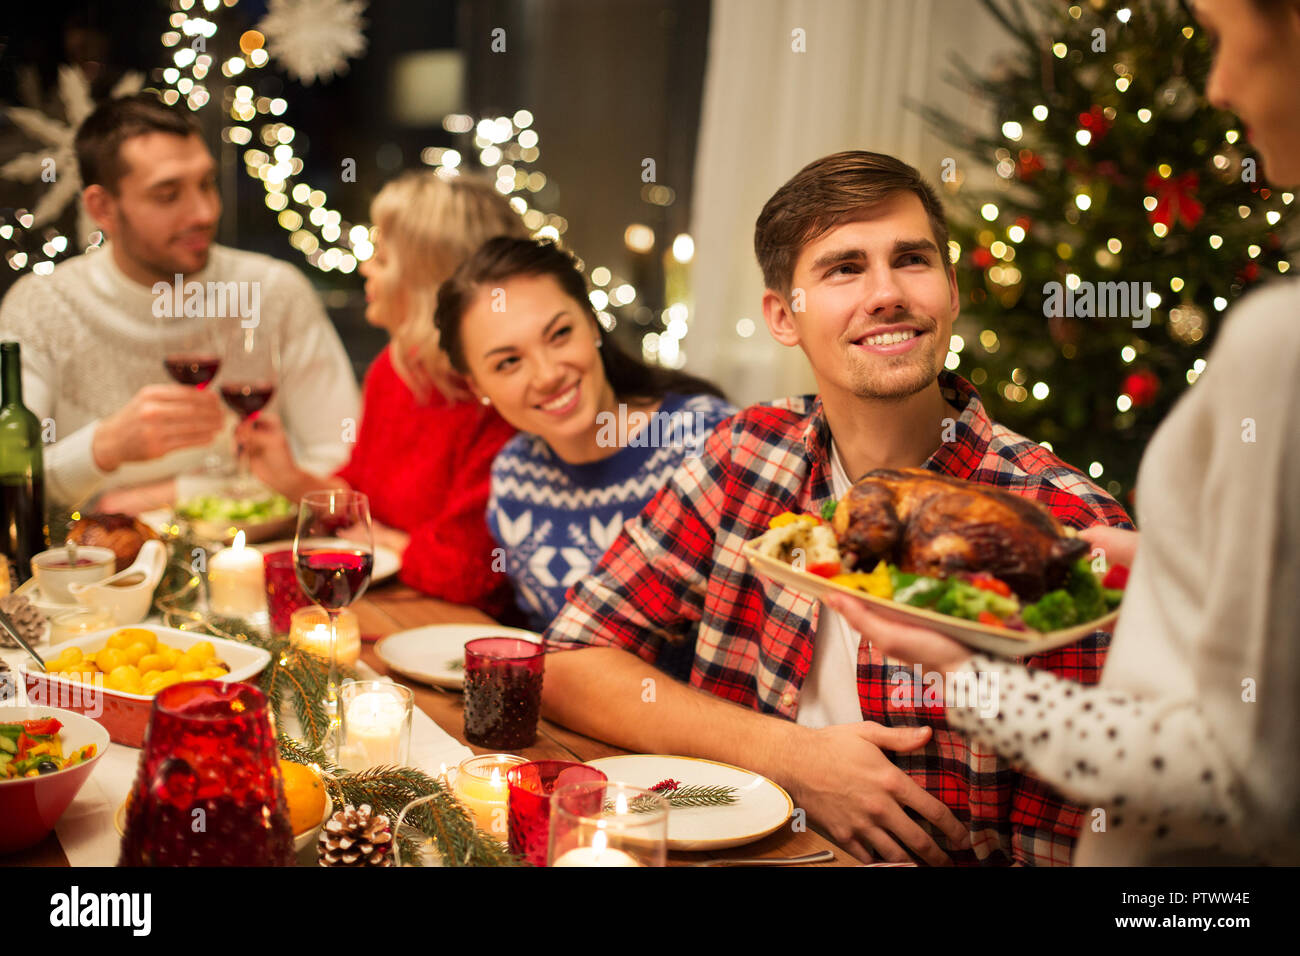 Feliz navidad amigos que cenar en casa Foto de stock